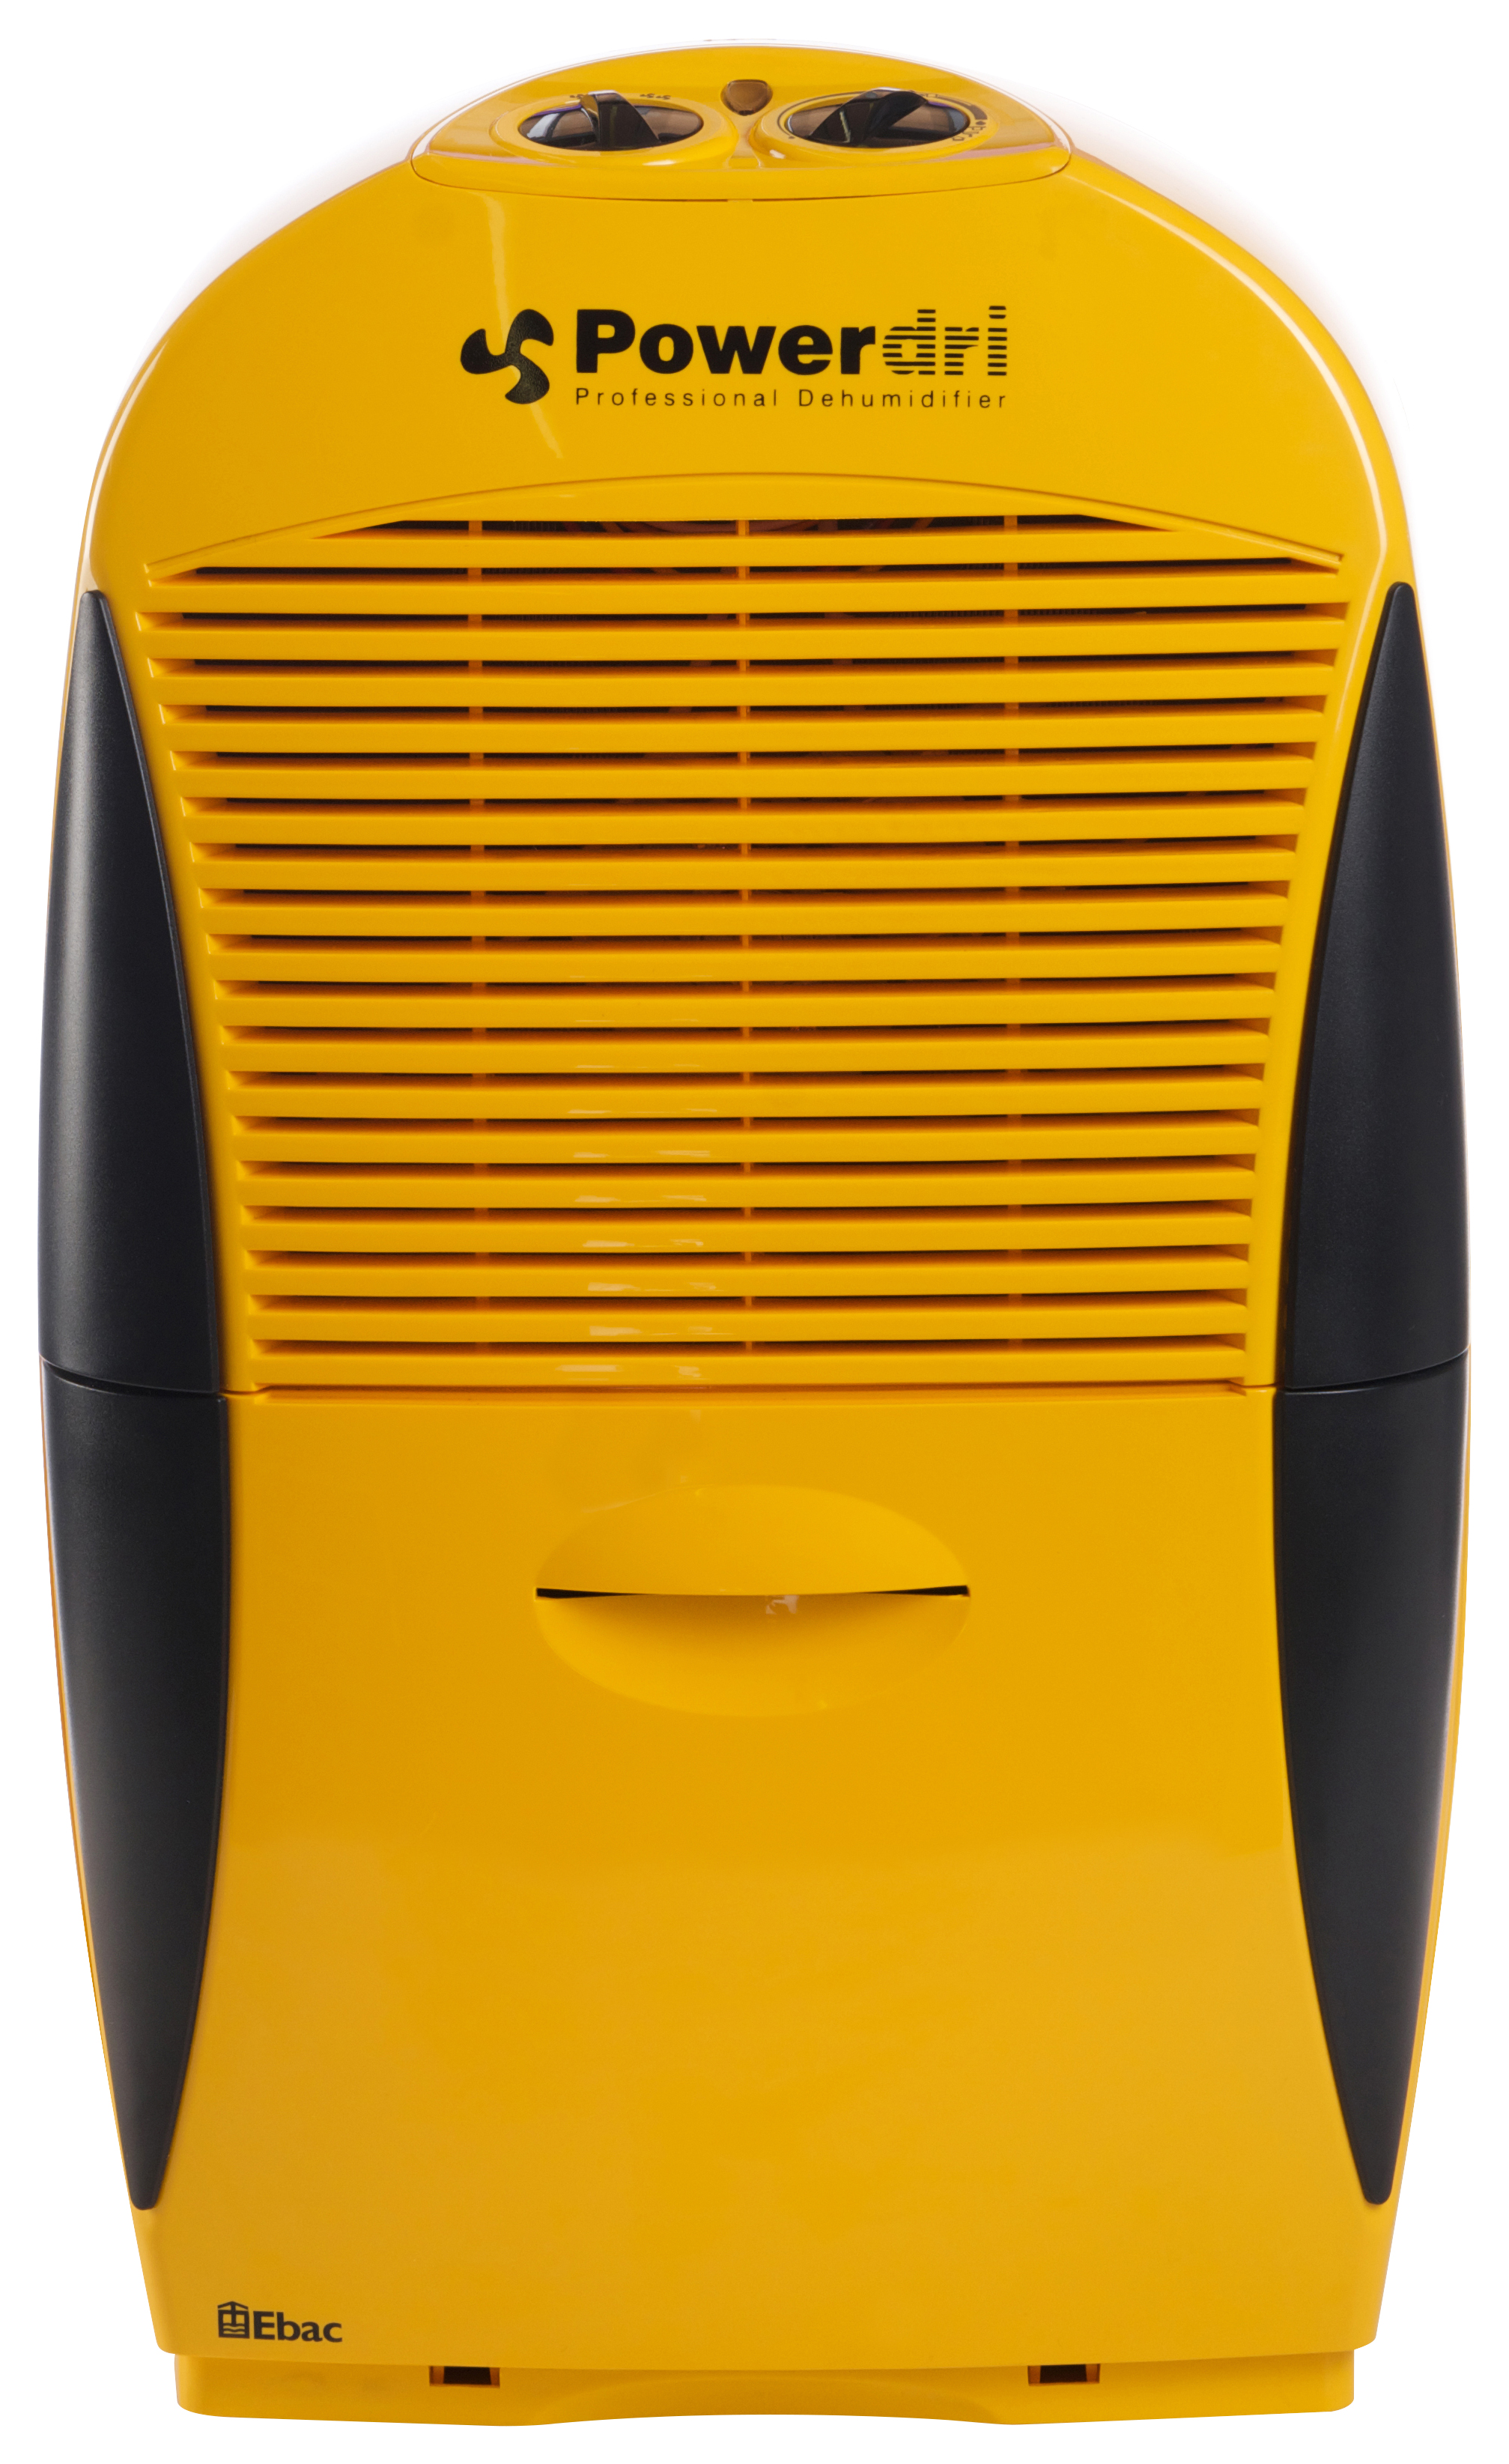 Ebac Powerdri 18 Dehumidifier - Yellow